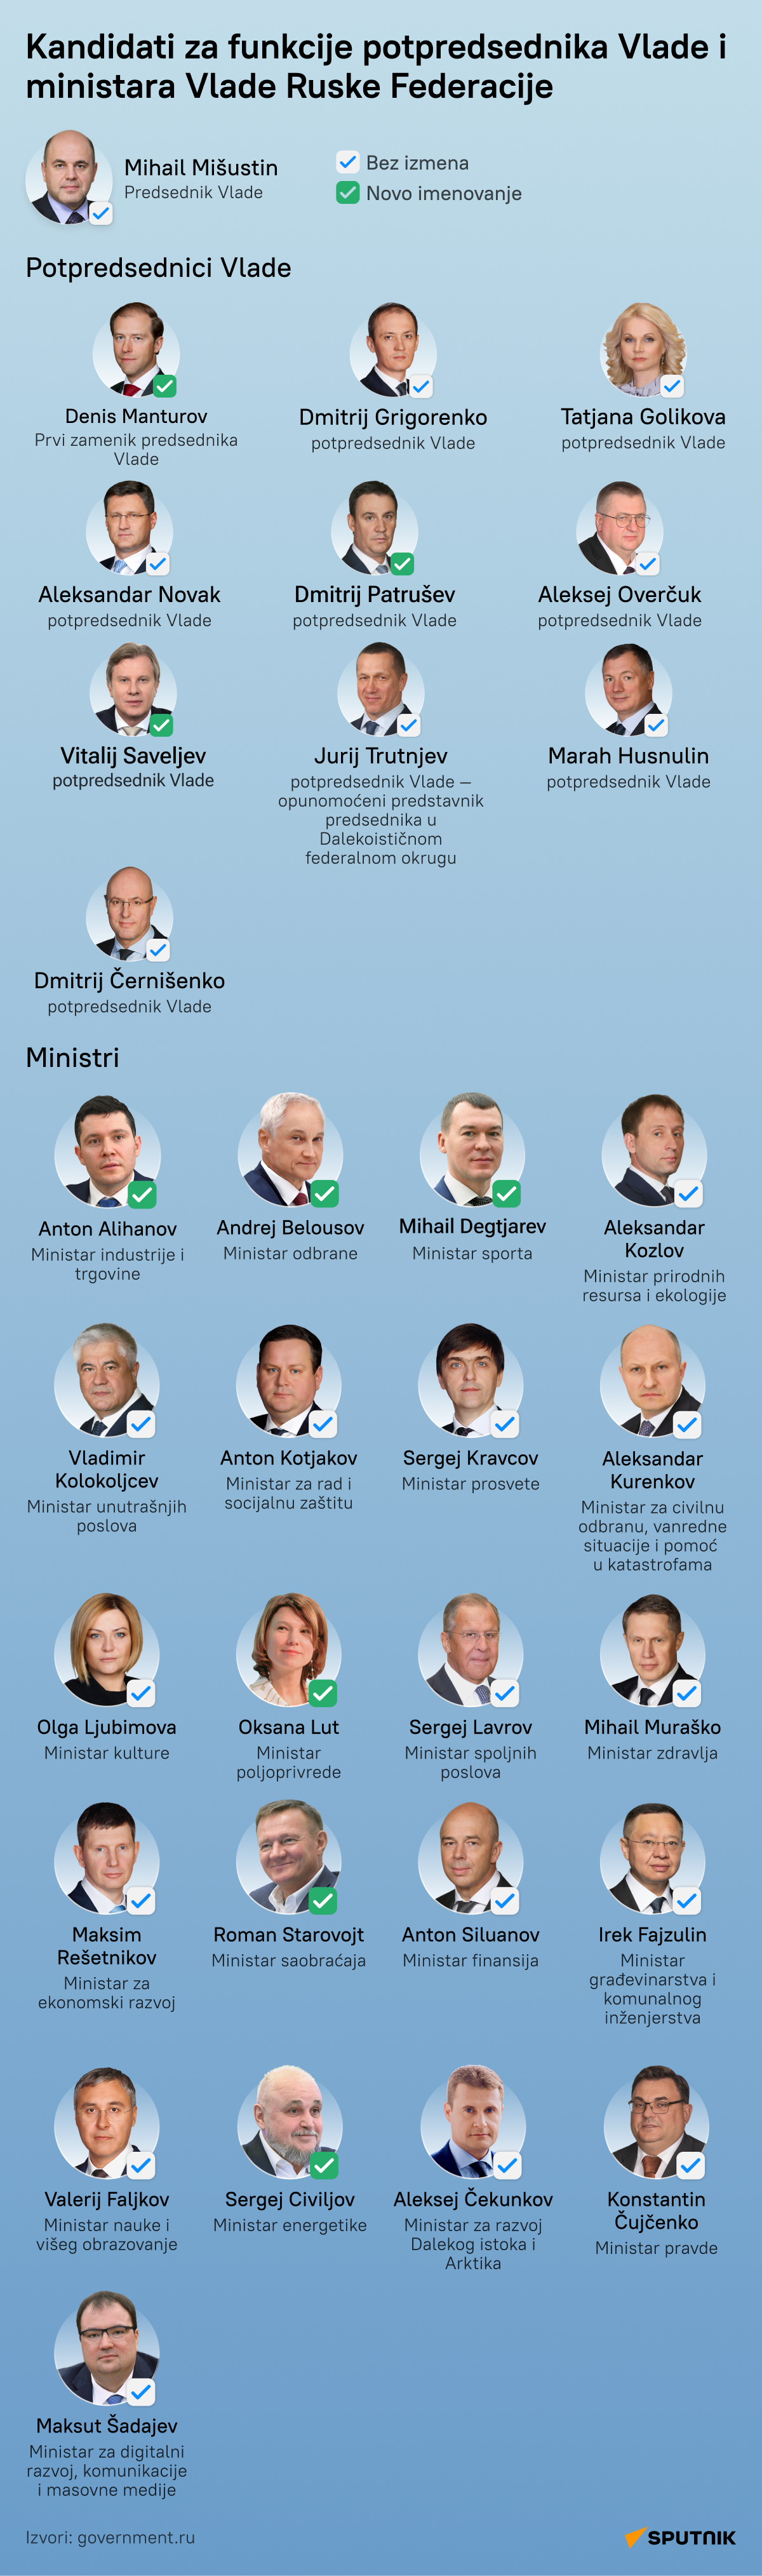 Kandidati za novu Vladu Rusije LATINICA desk - Sputnik Srbija